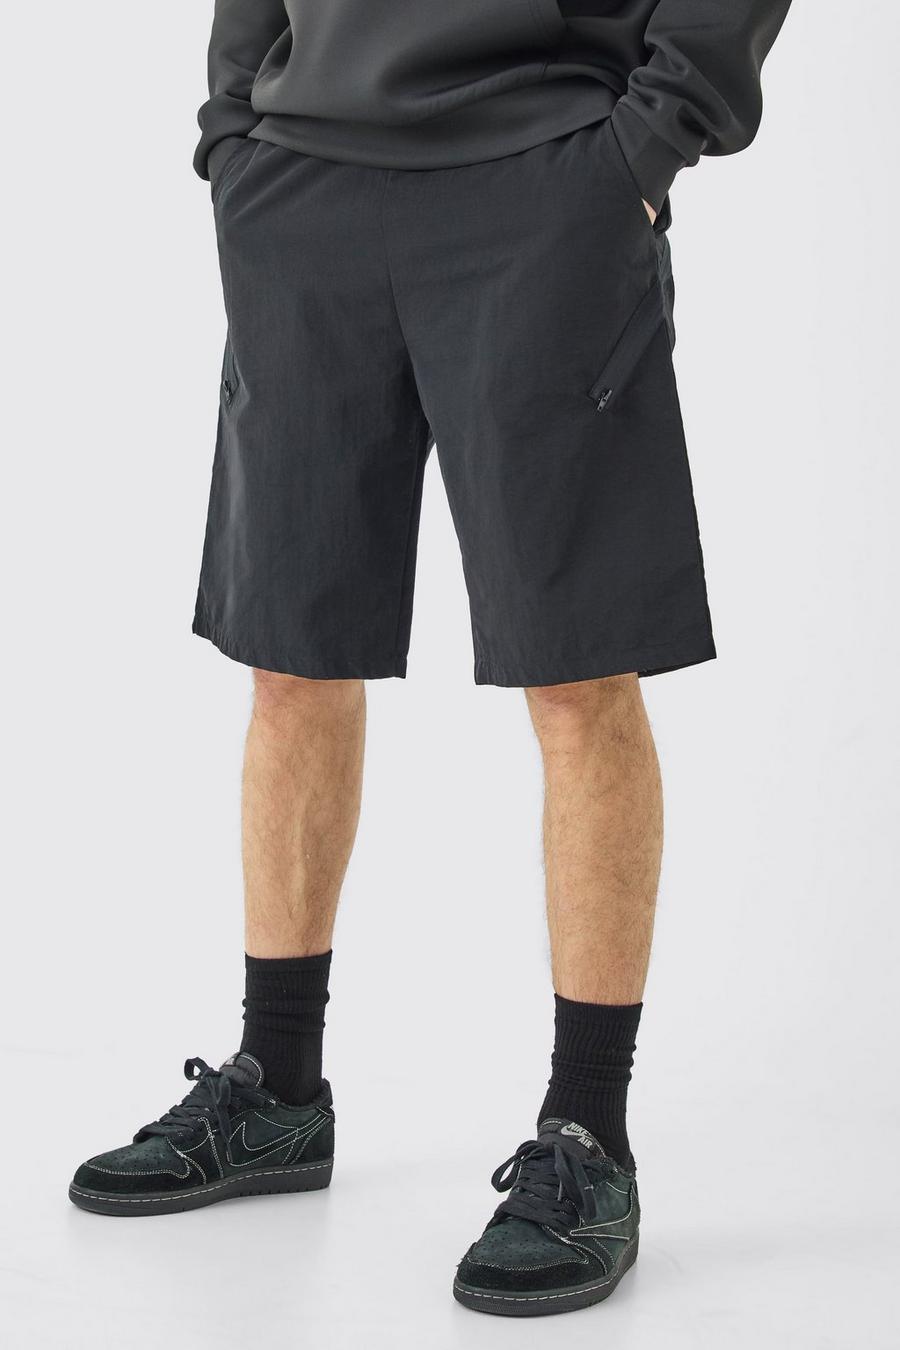 Pantaloncini Tall asimmetrici con vita elasticizzata e zip, Black